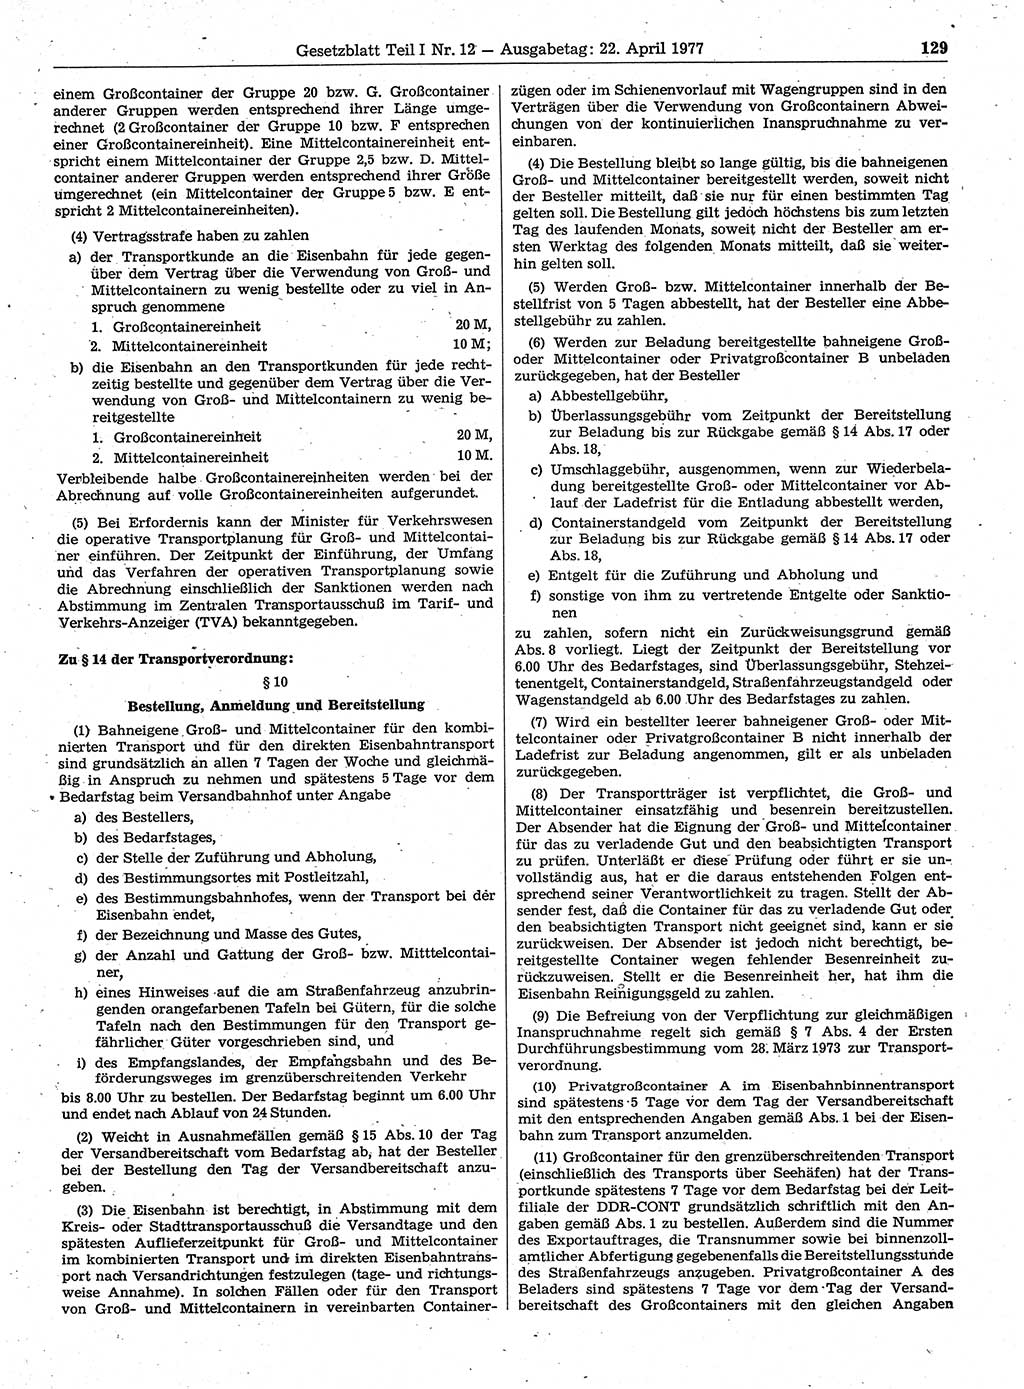 Gesetzblatt (GBl.) der Deutschen Demokratischen Republik (DDR) Teil Ⅰ 1977, Seite 129 (GBl. DDR Ⅰ 1977, S. 129)